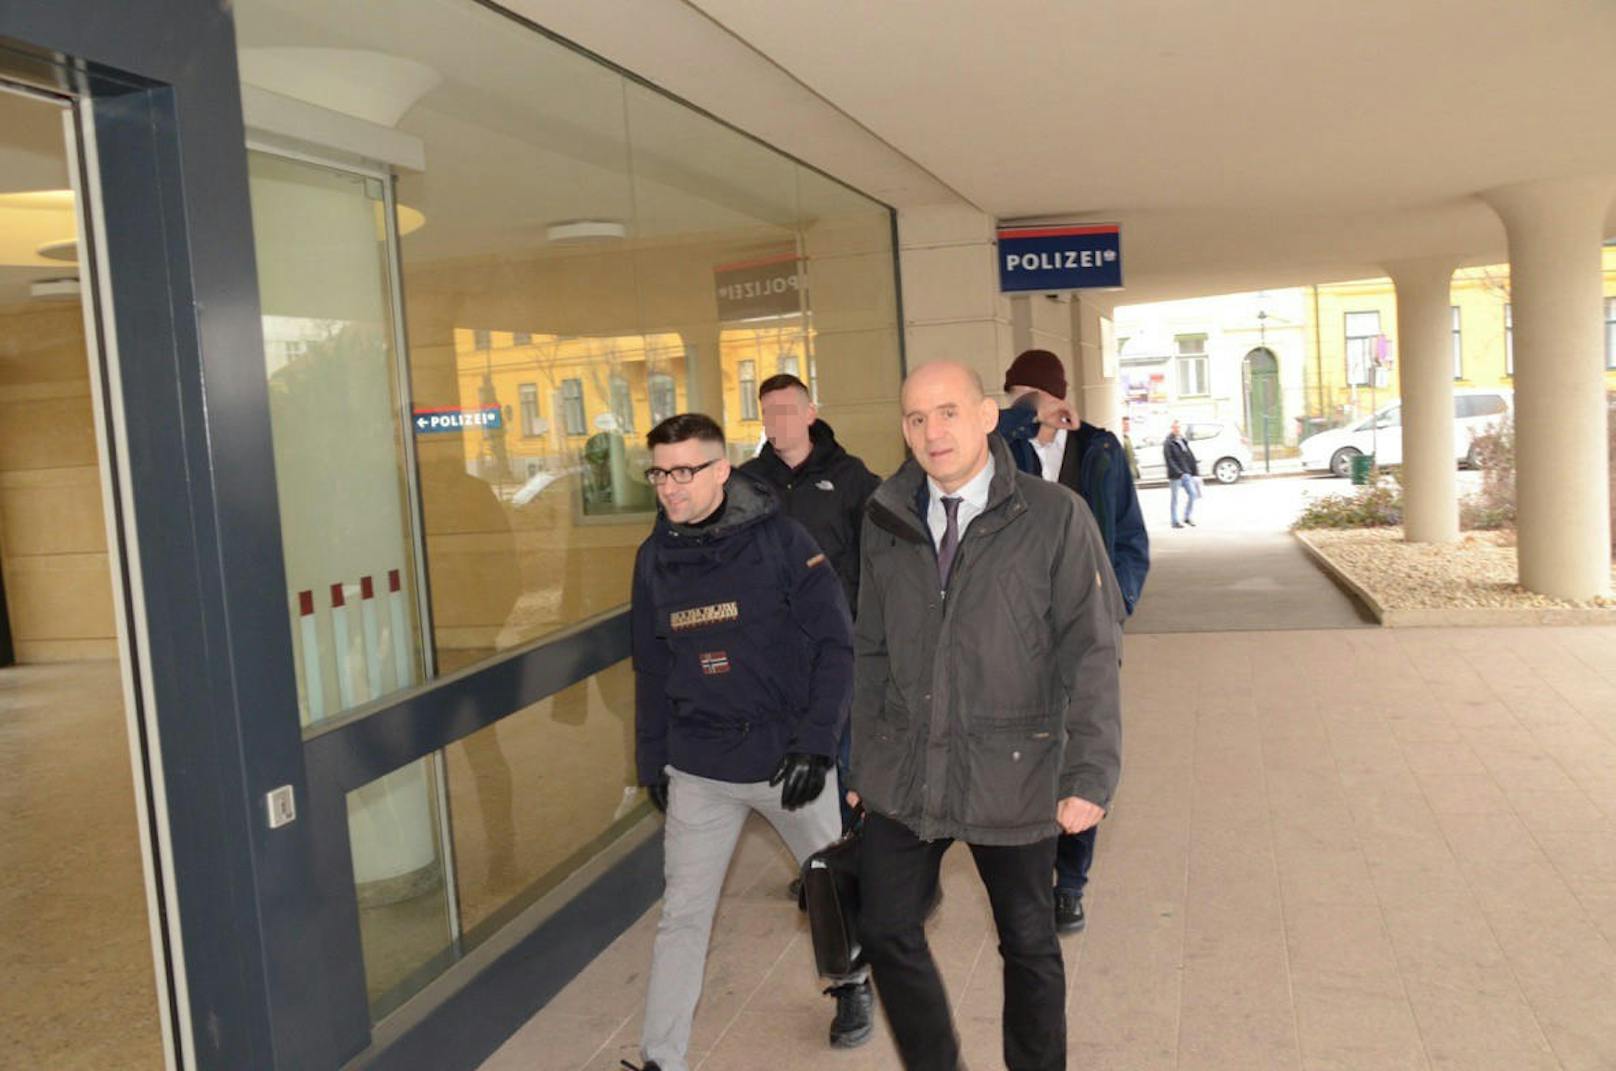 Die Angeklagten kommen am Gerichtsgebäude in Baden an. Vorne links geht Martin Sellner, Sprecher der rechtsextremen "Identitären".